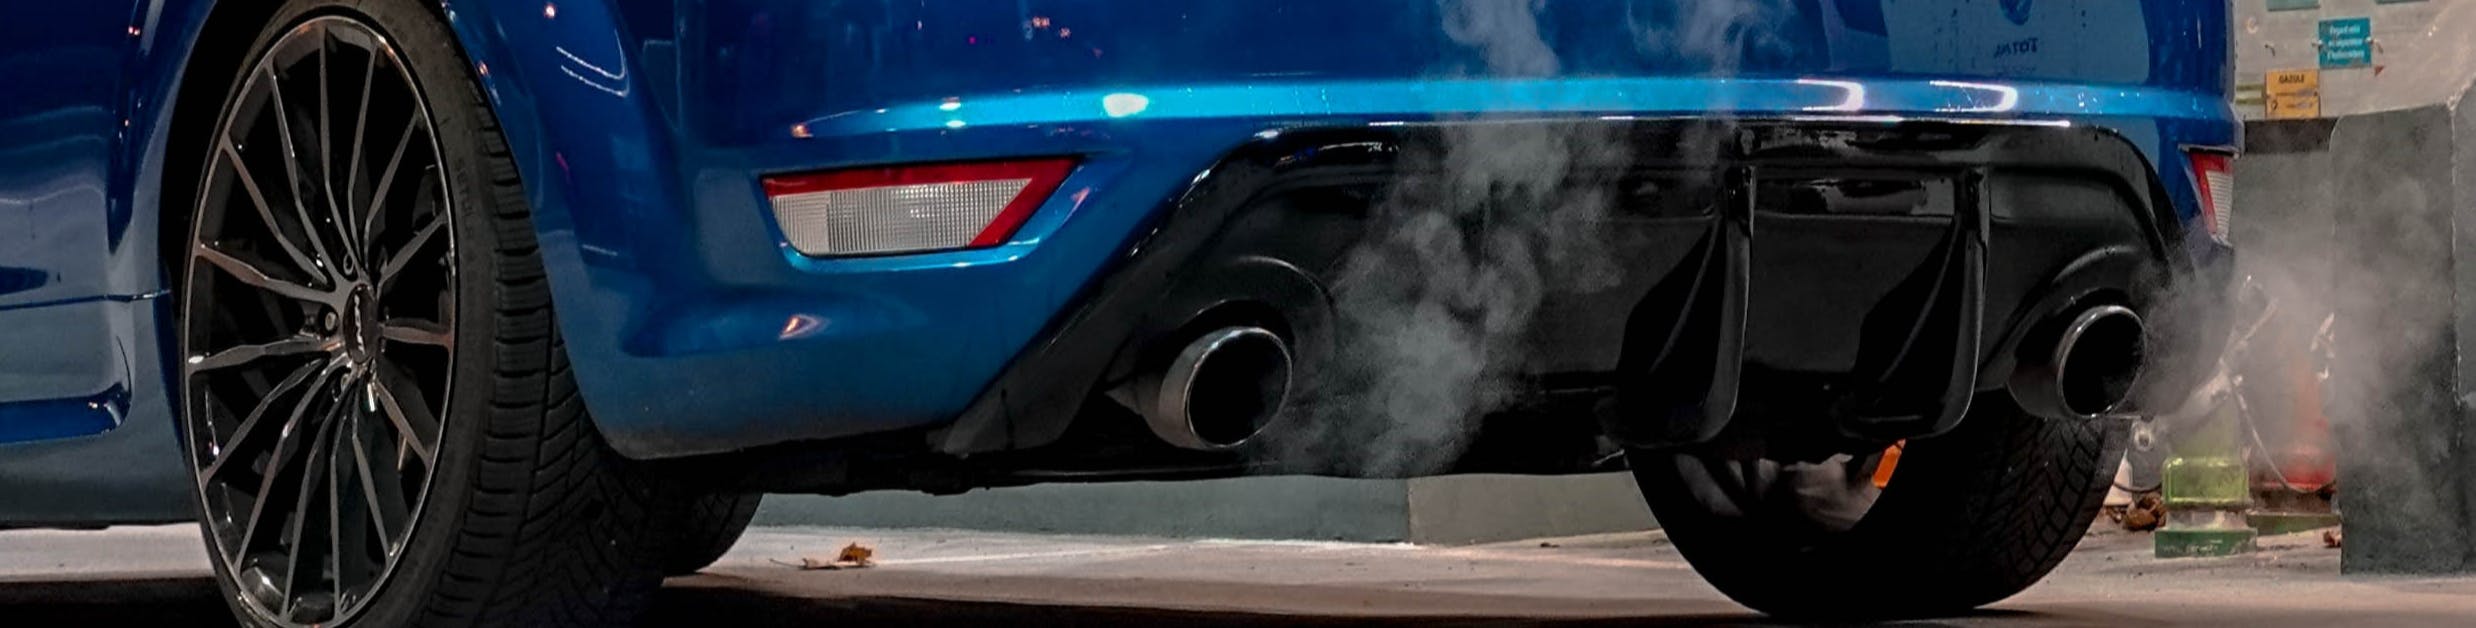 Photo du tuyau d’échappement d’une voiture qui dégage des gaz d’échappement tandis que le véhicule marche au ralenti